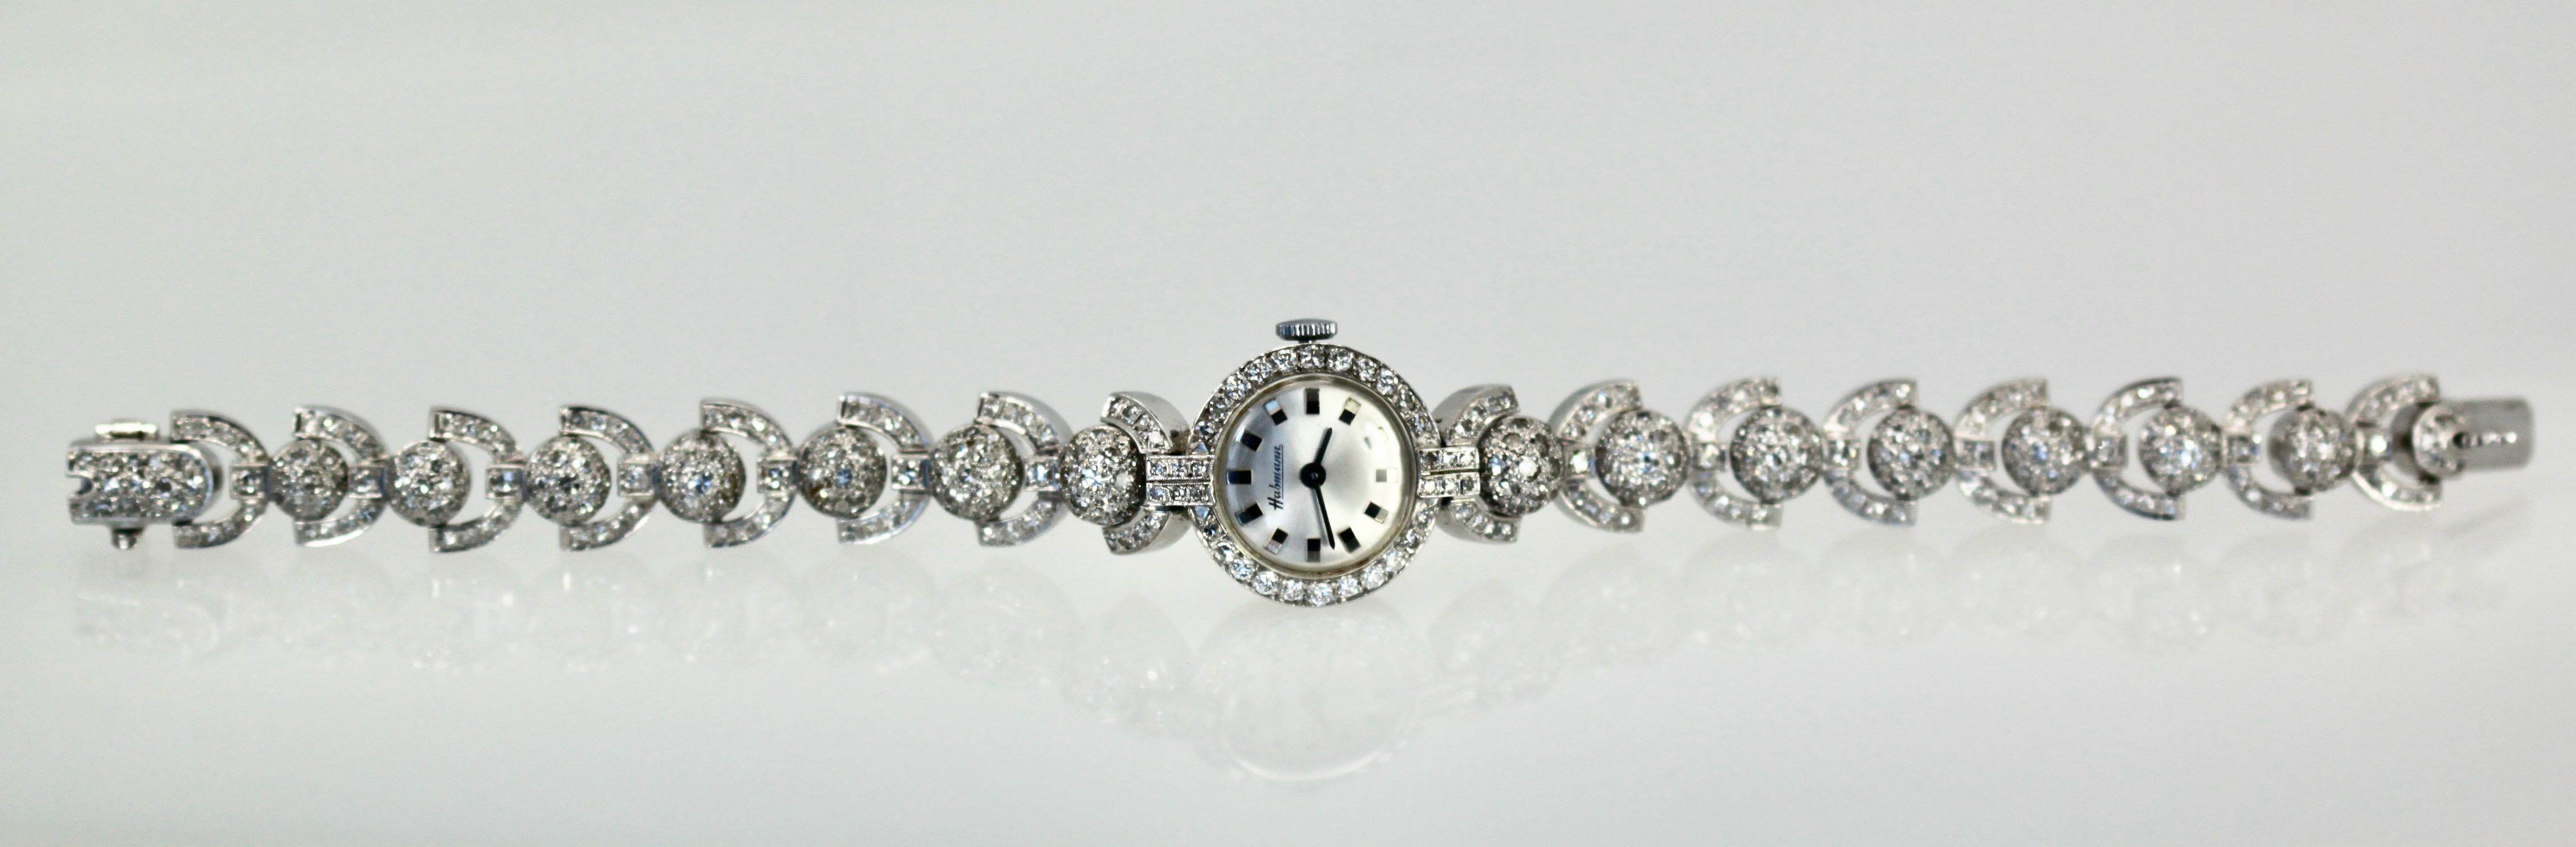 Women's 1950's Ladies Unique Diamond Cocktail Watch 4.2 Carats For Sale